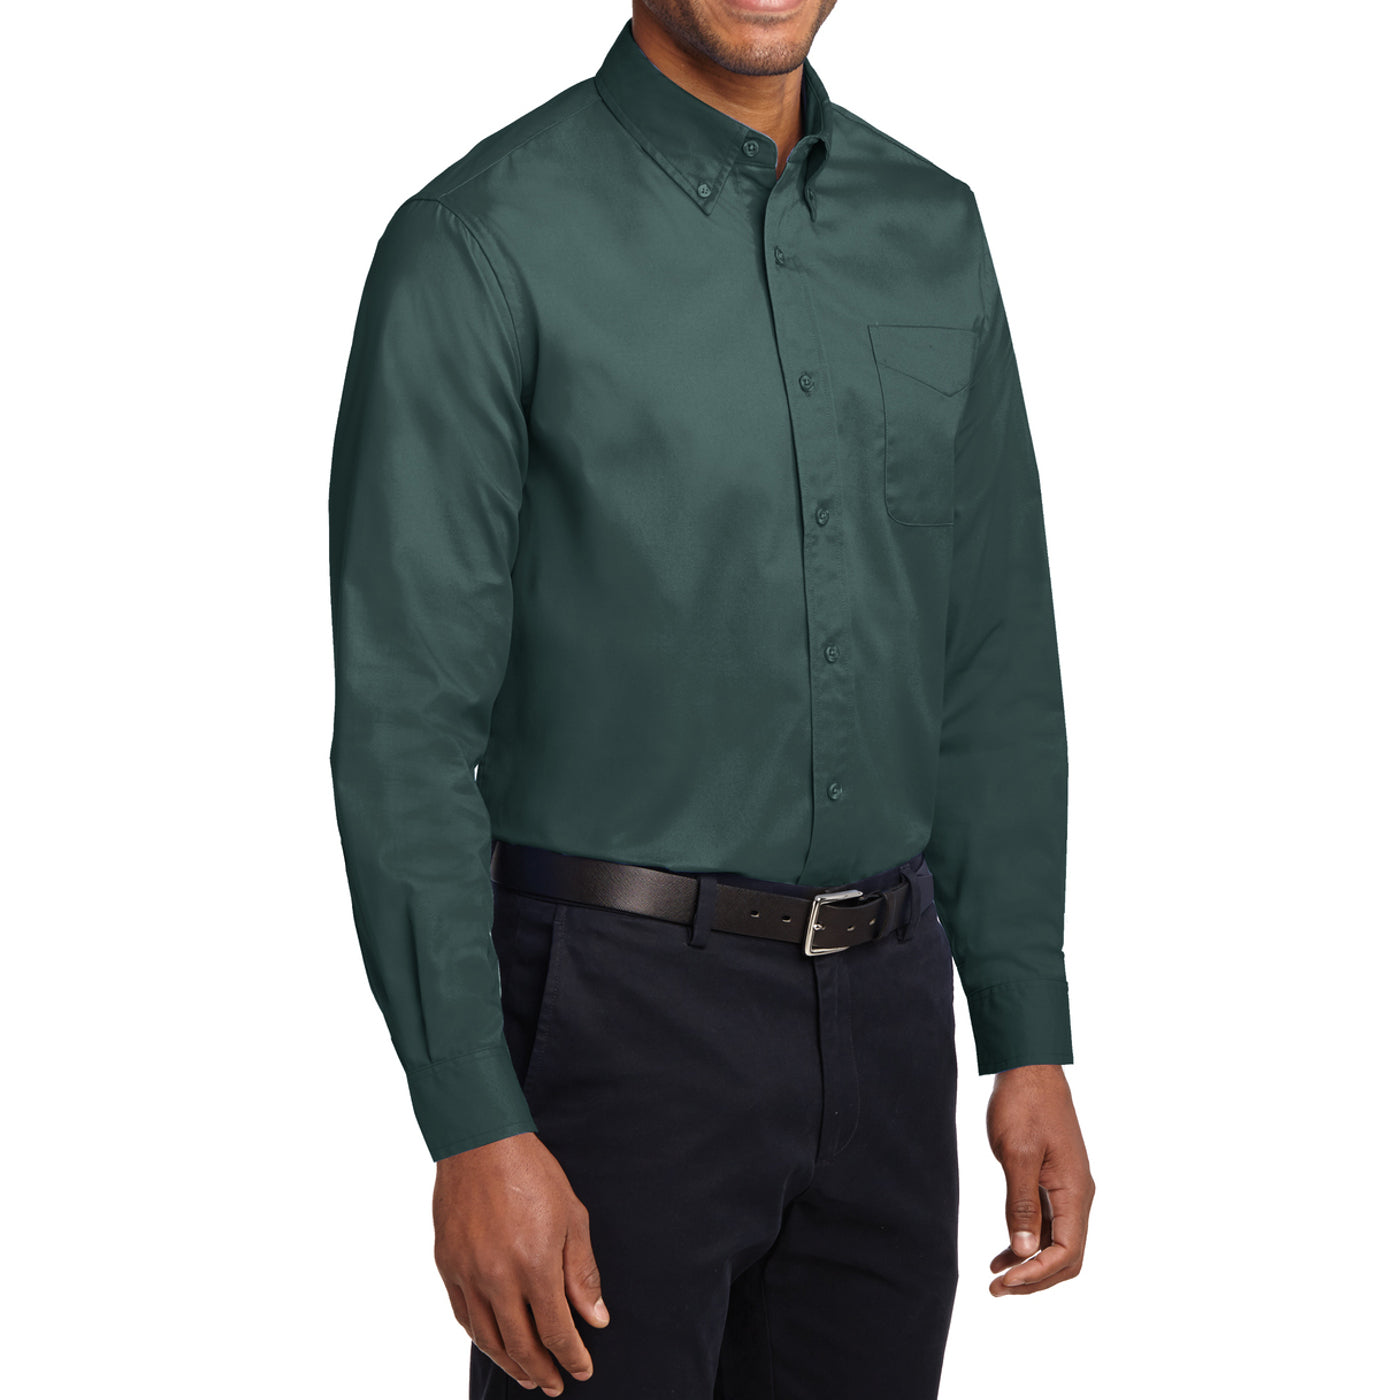 Men's Long Sleeve Easy Care Shirt - Dark Green/ Navy - Side